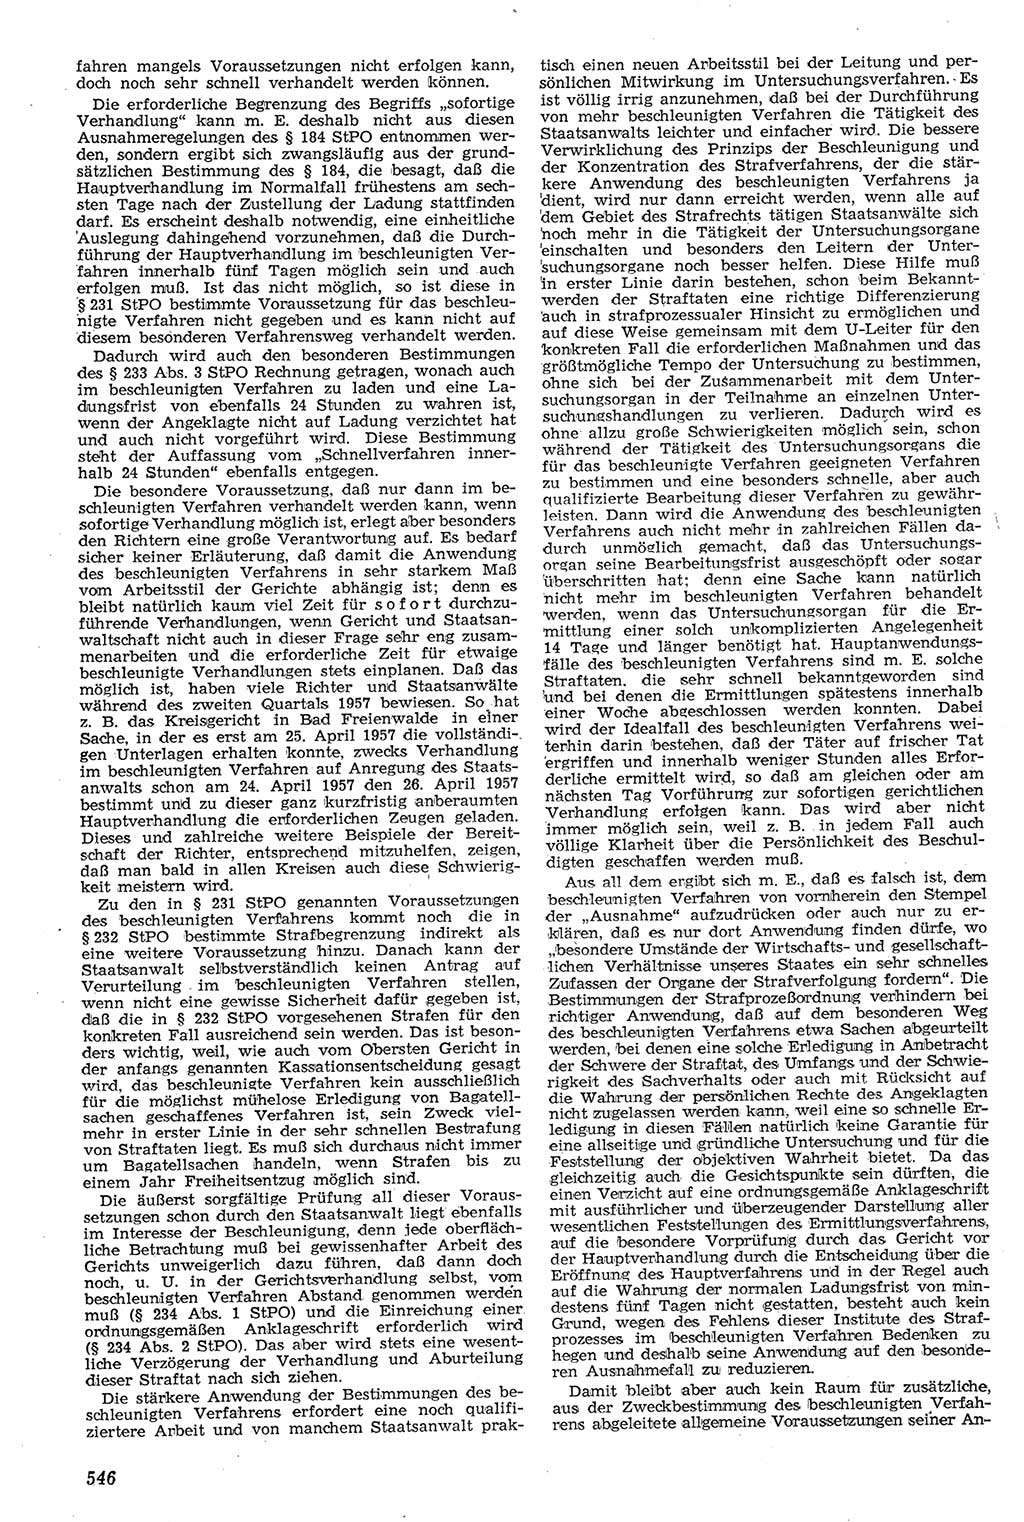 Neue Justiz (NJ), Zeitschrift für Recht und Rechtswissenschaft [Deutsche Demokratische Republik (DDR)], 11. Jahrgang 1957, Seite 546 (NJ DDR 1957, S. 546)